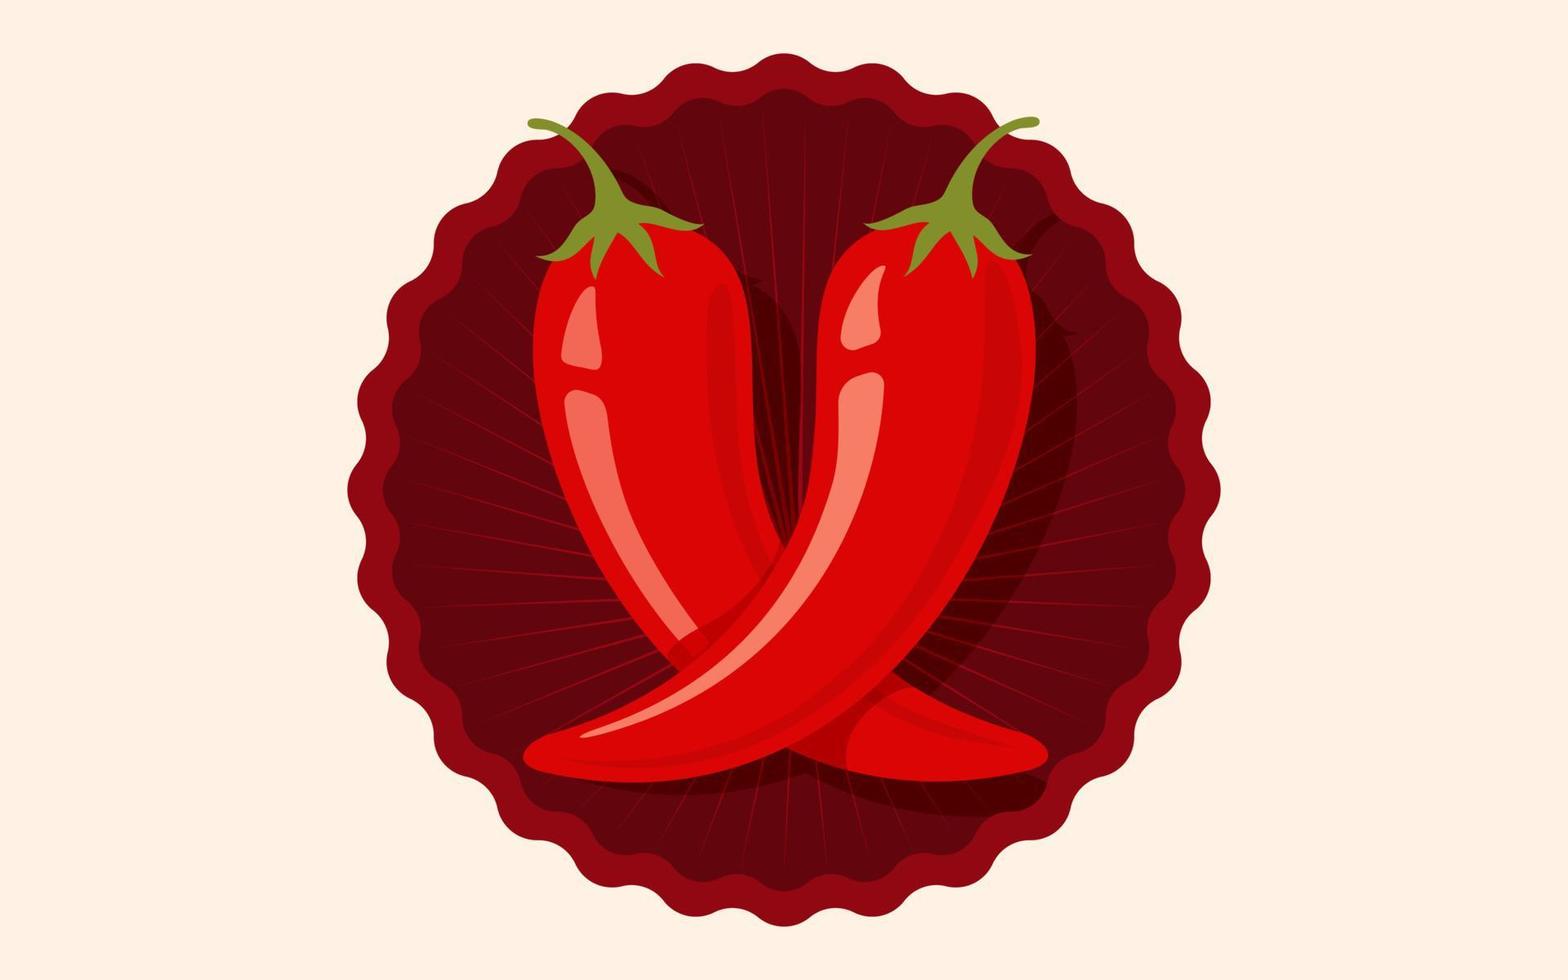 Vektor-Chili-Pfeffer. Vektor-Emblem Jalapeno oder Chilischoten. Chilischote für thailändisches oder mexikanisches Essen vektor